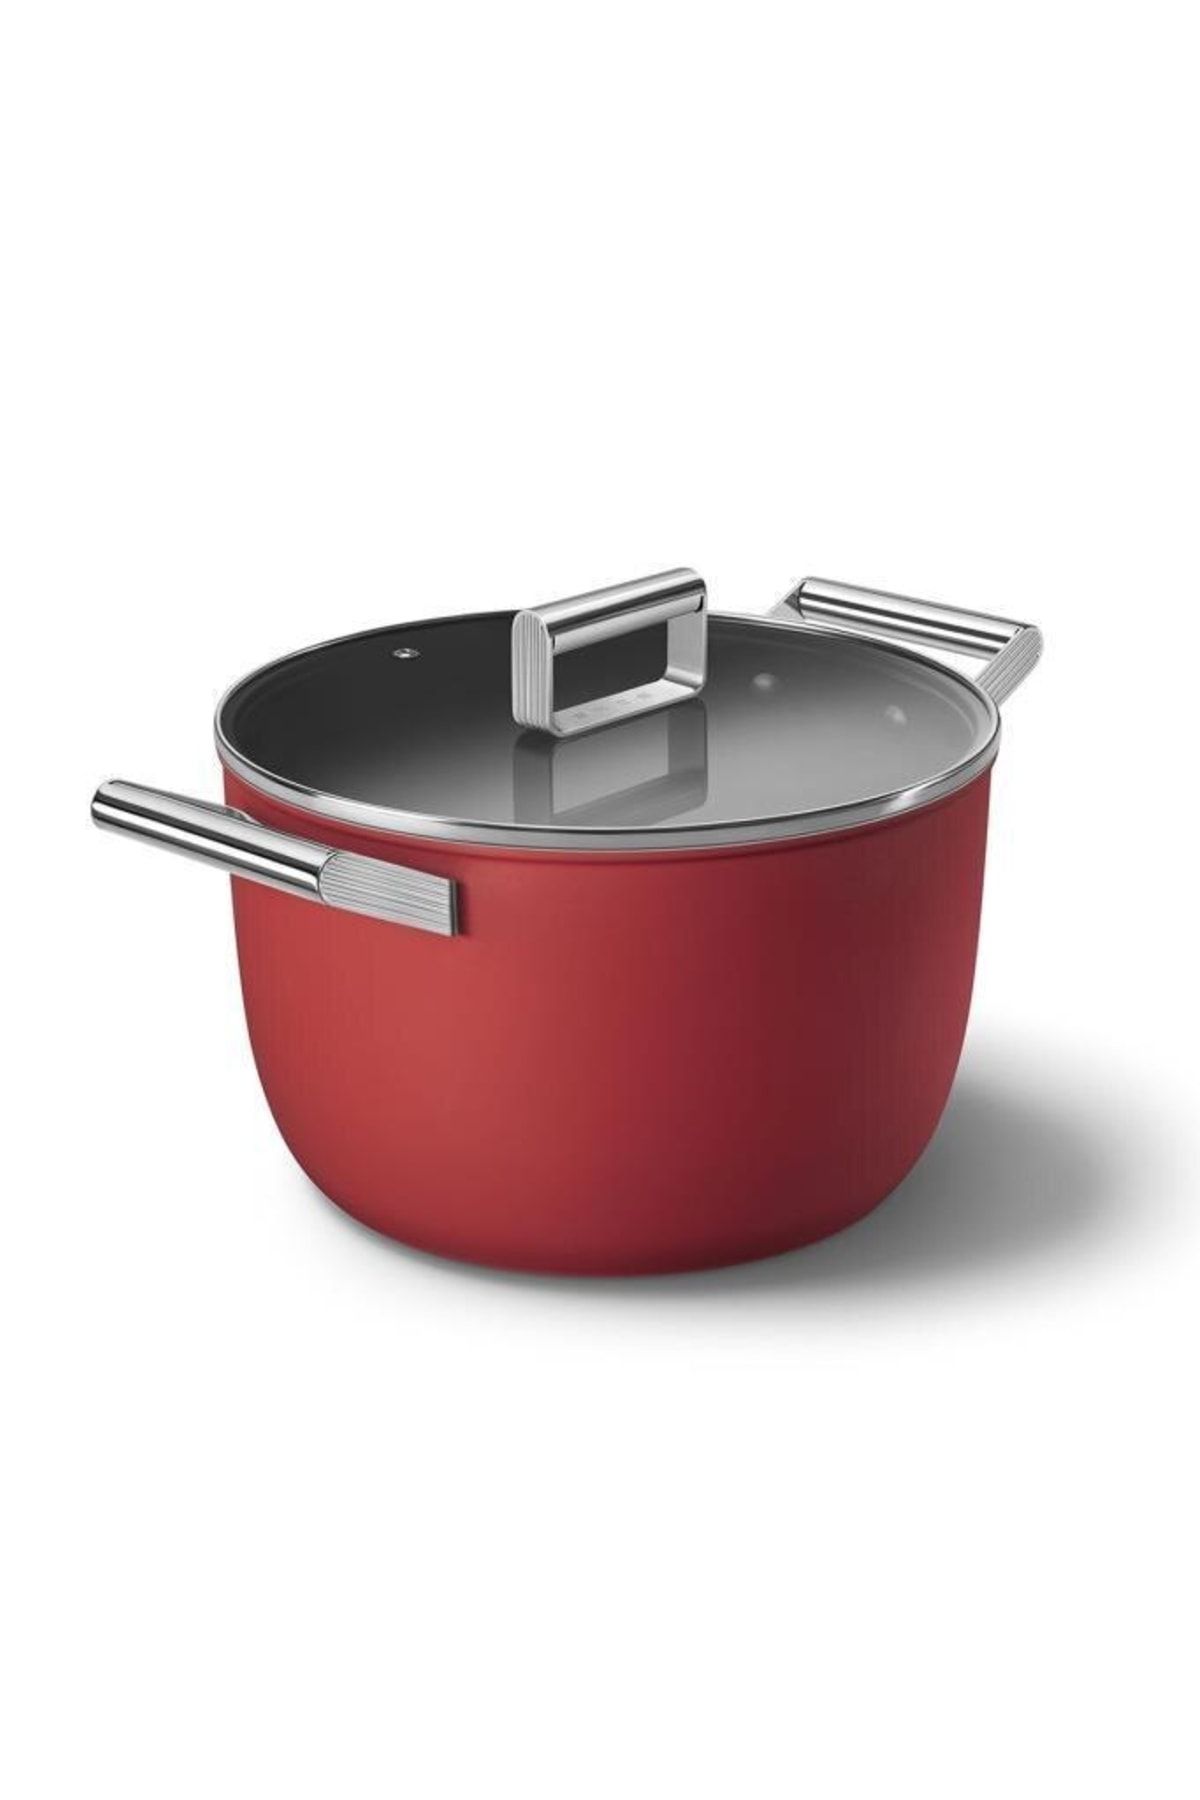 Smeg Cookware 50's Style Cam Kapaklı 26 Cm Tencere Kırmızı